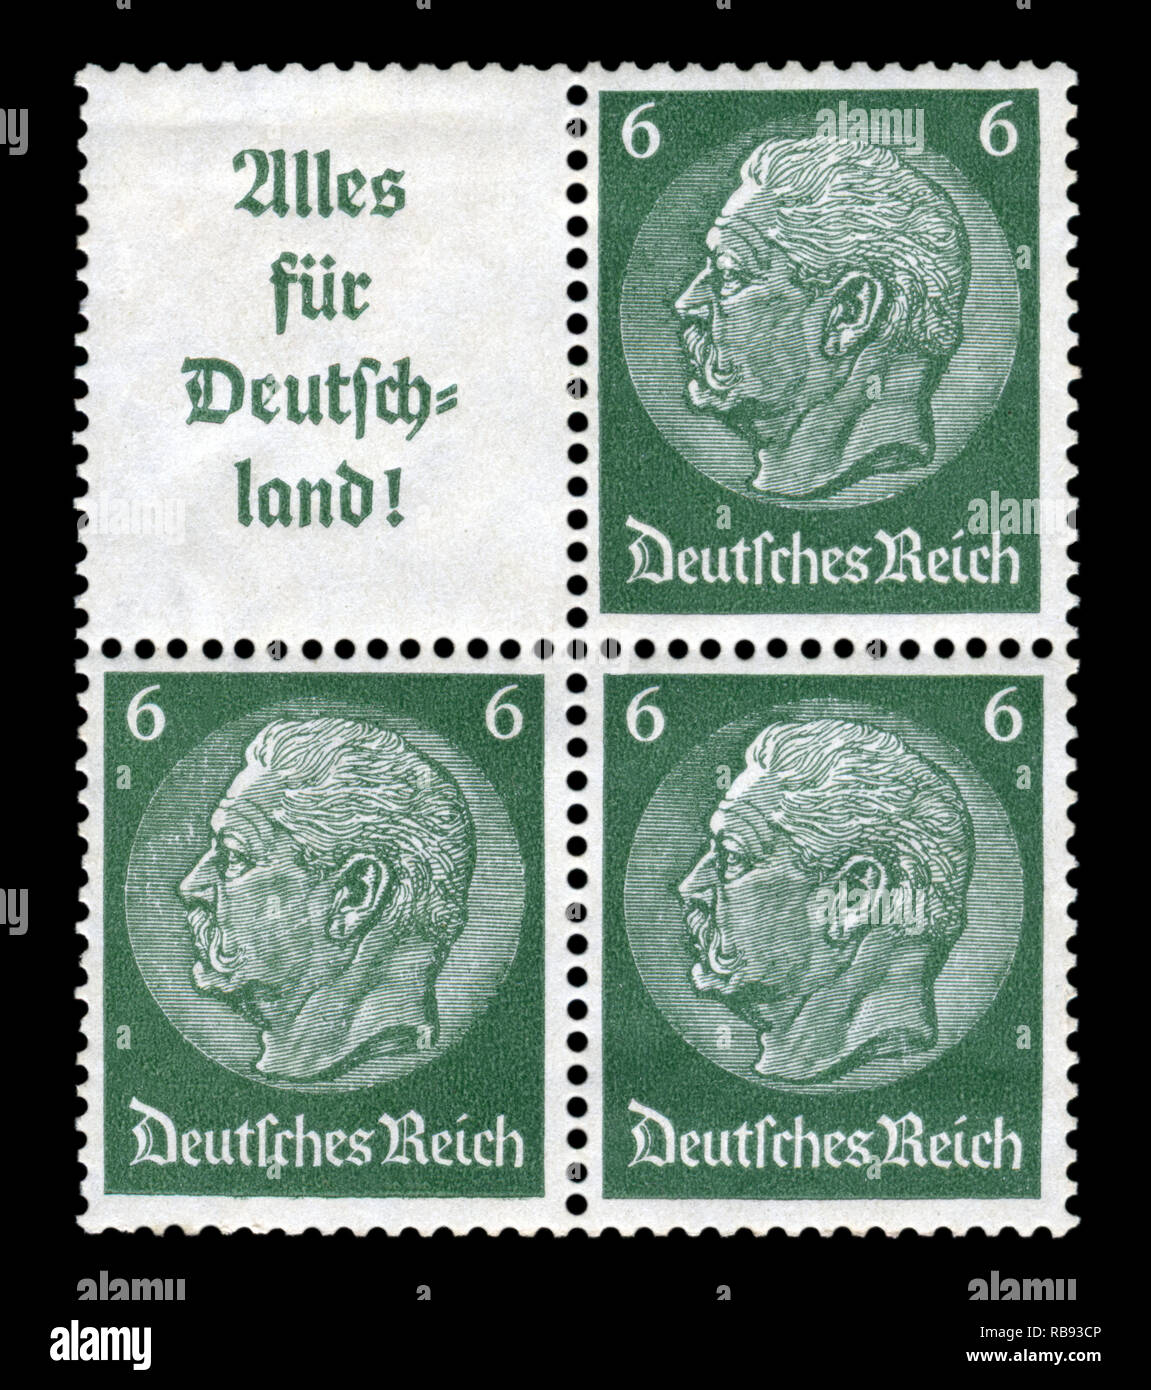 Deutschen Historischen Block von vier Briefmarken: Paul von Hindenburg - Serie Medaillons 1933-1936 Ausgabe, "Alles für Deutschland", das Dritte Reich. Stockfoto